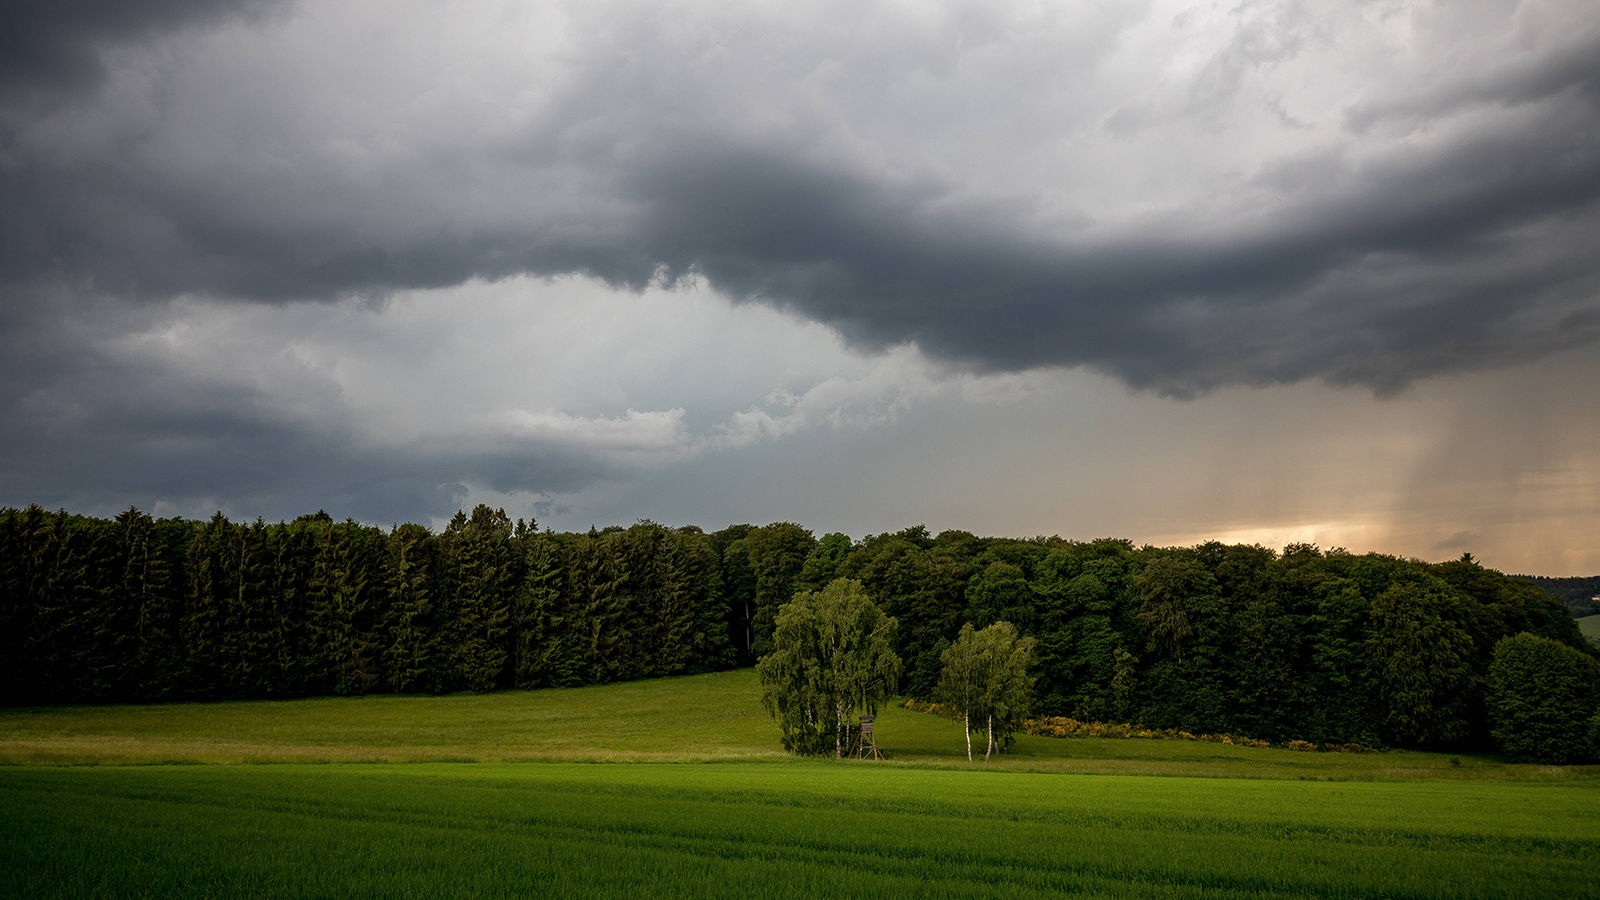 NRW – Aktualności – WDR – W wiadomościach możliwe trudne warunki pogodowe